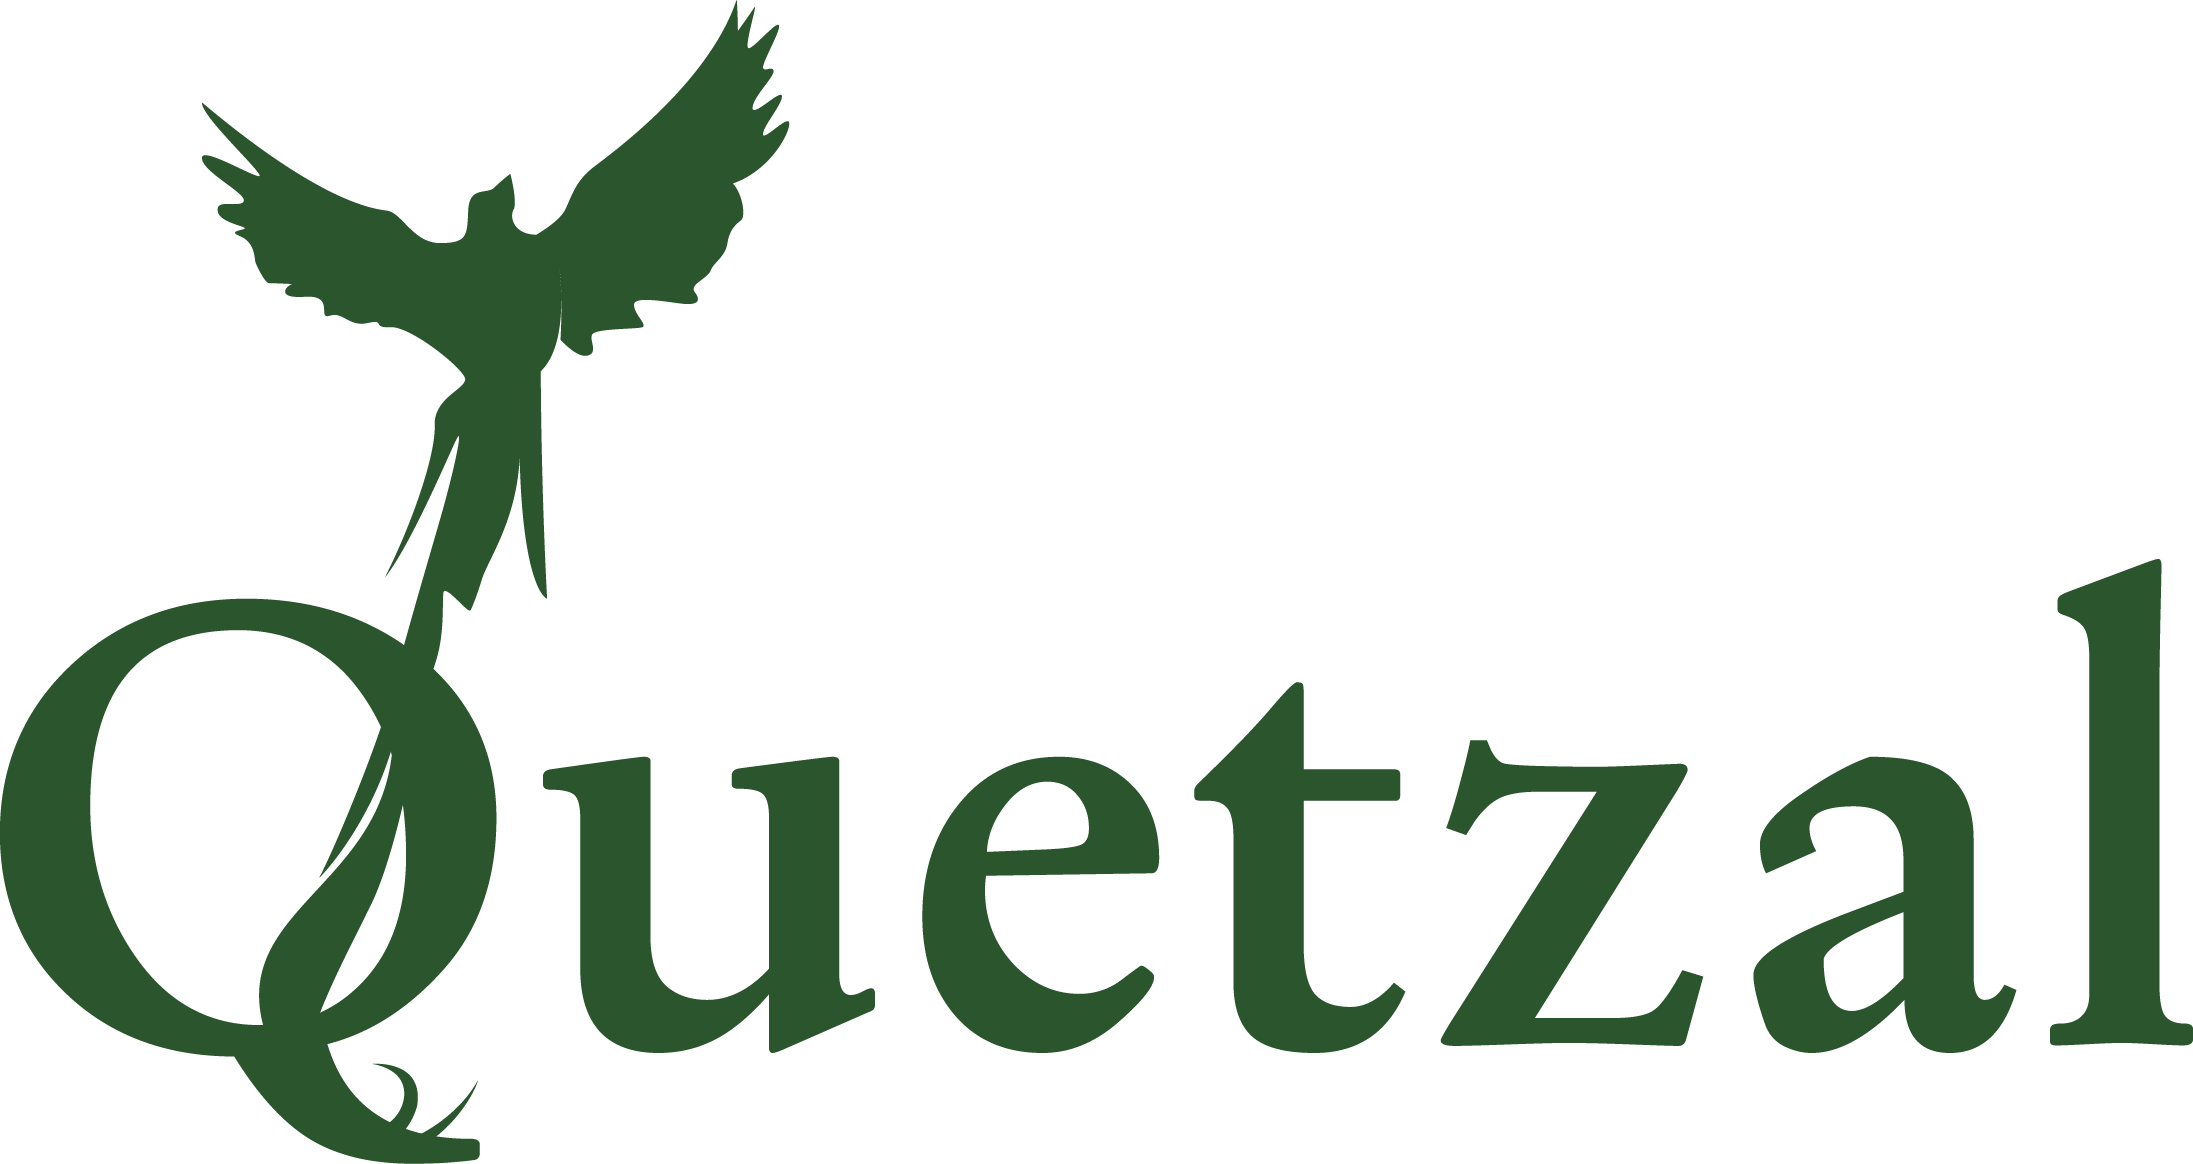 L'asbl Quetzal - Graphic Design (2193x1164), Png Download